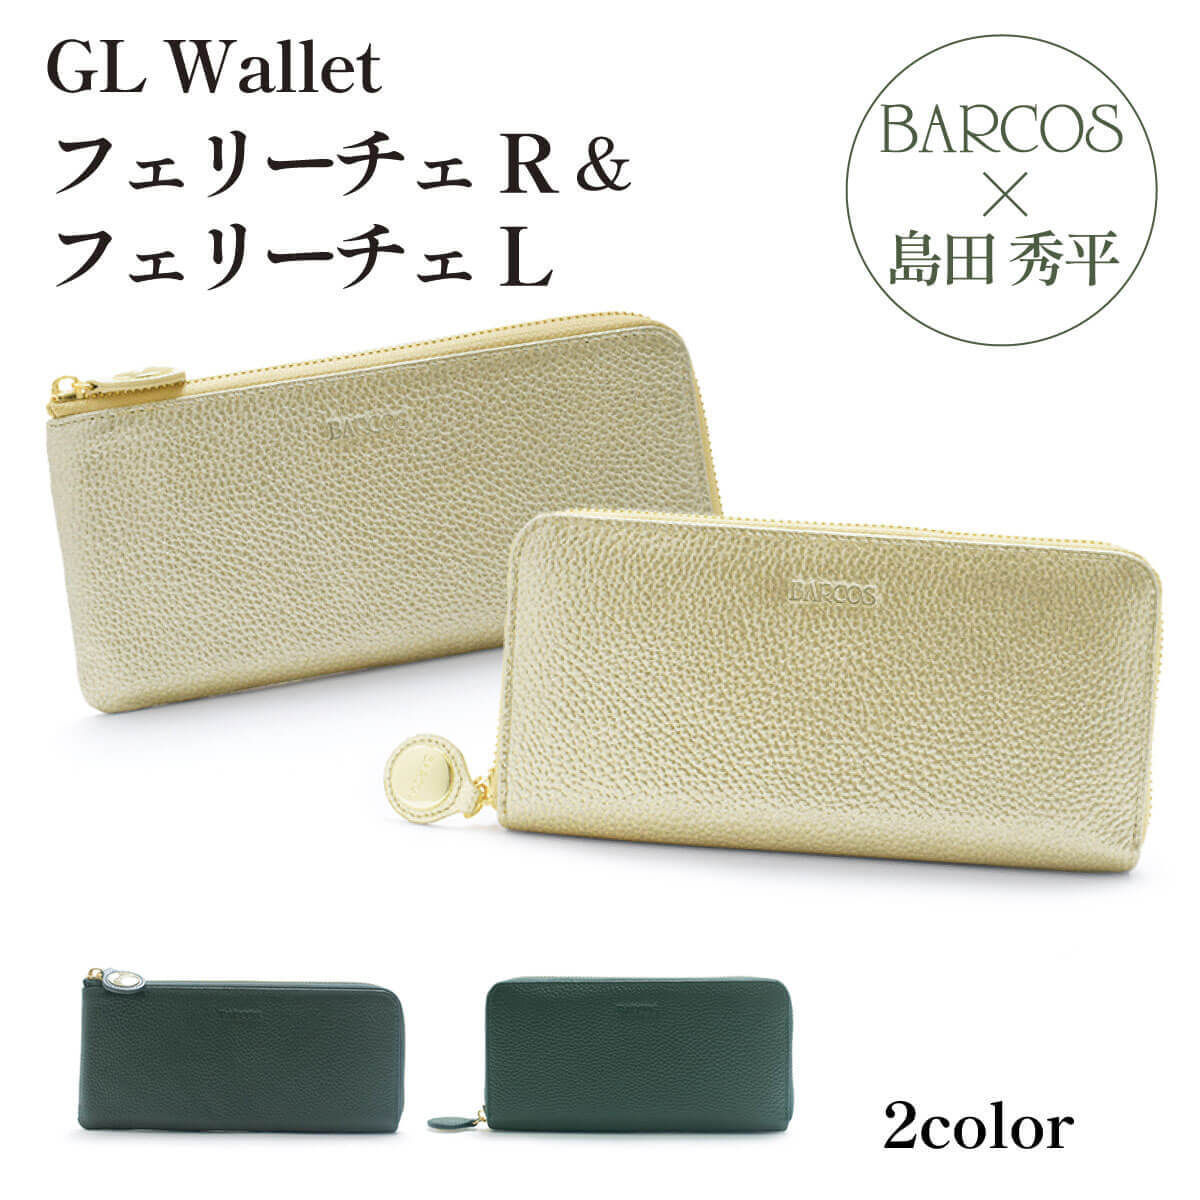 バルコス 金の財布 緑の財布 島田秀